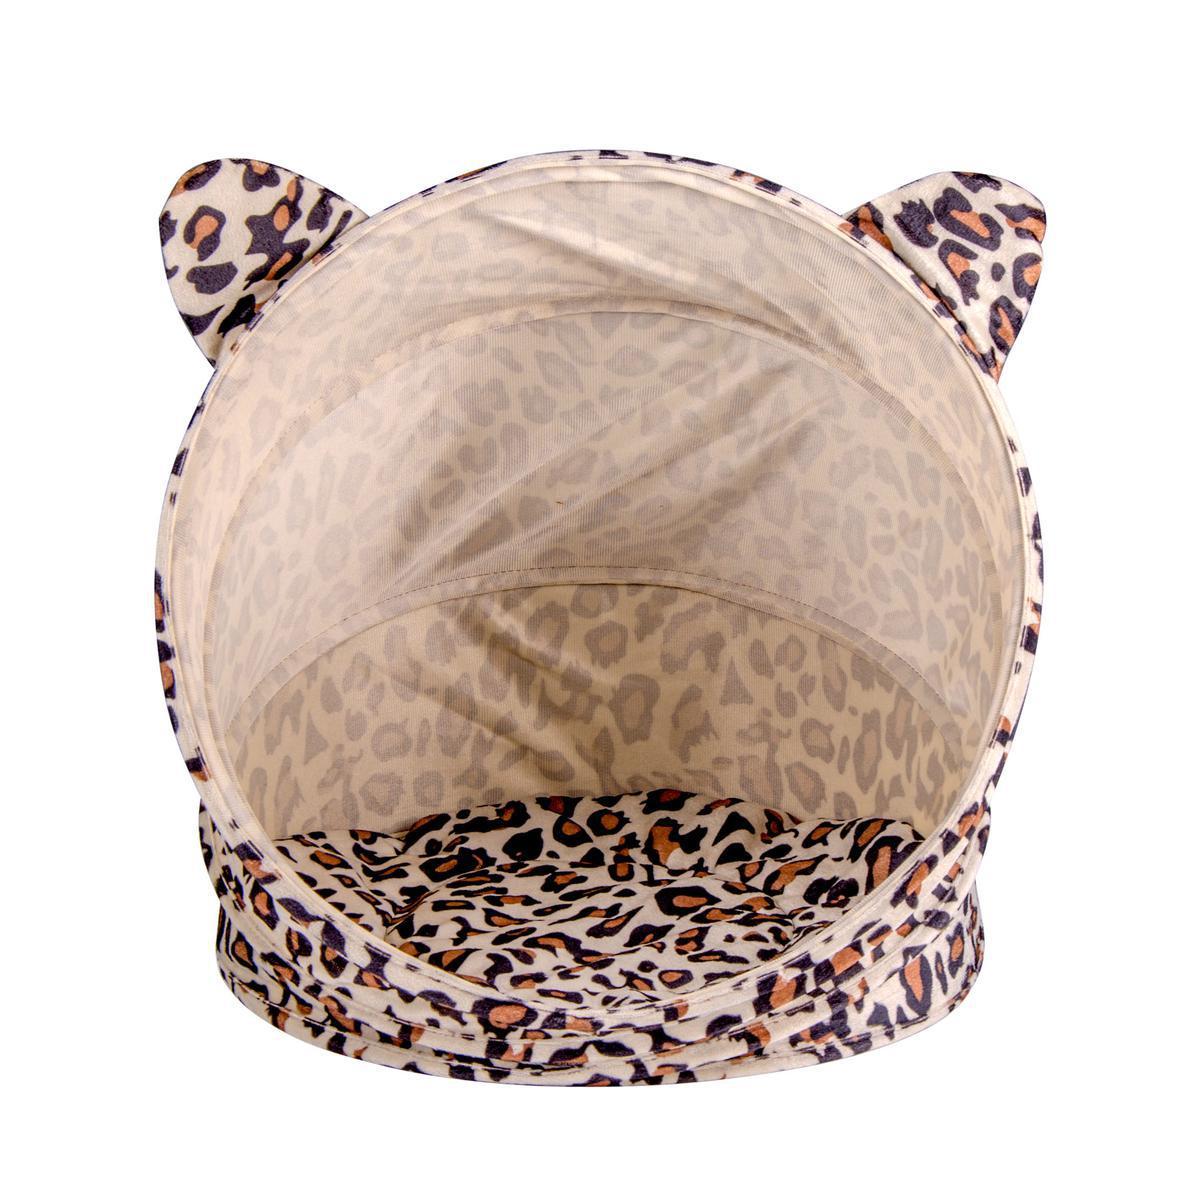 Tente à chat léopard - Polyester - H 48 cm - Blanc, marron et noir